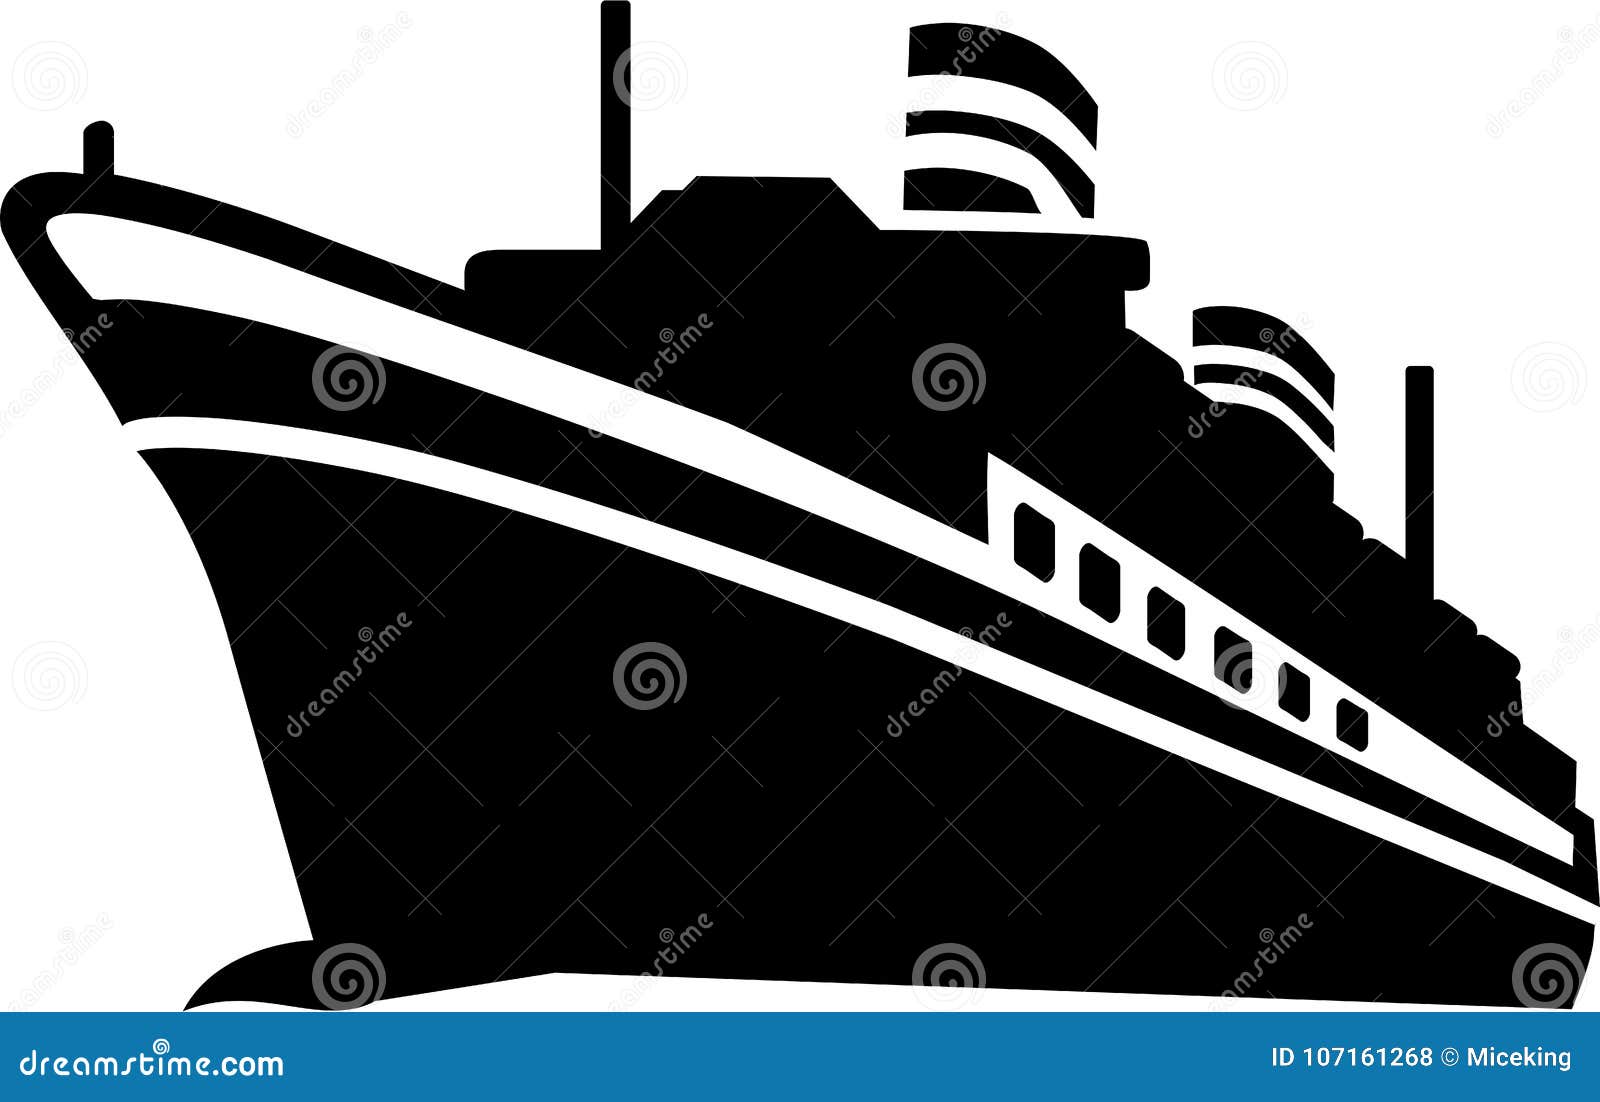 Vetor Do Navio De Cruzeiros Ilustração do Vetor - Ilustração de ... Simple Ship Silhouette